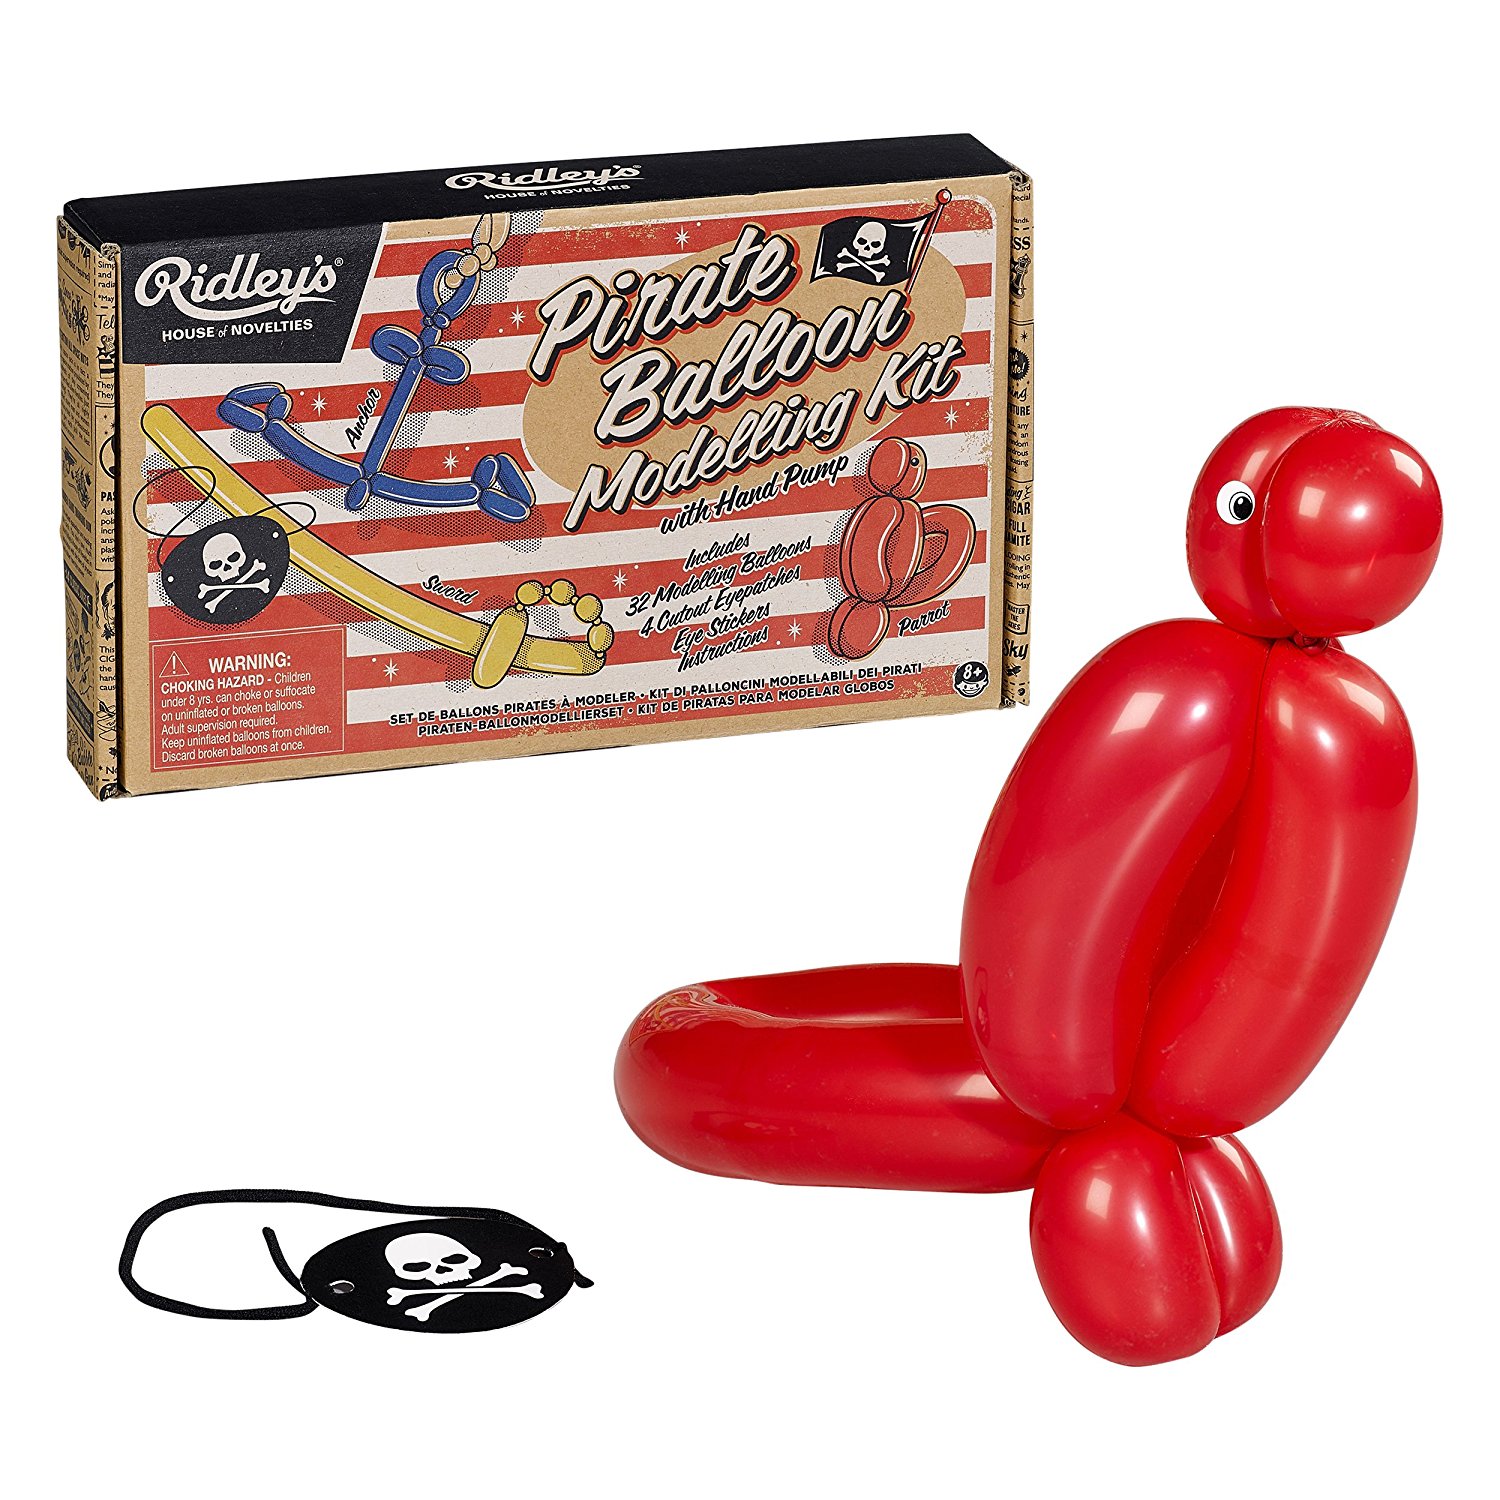 Kit Pentru Baloane - Pirates Ballon Modelling | Ridley's